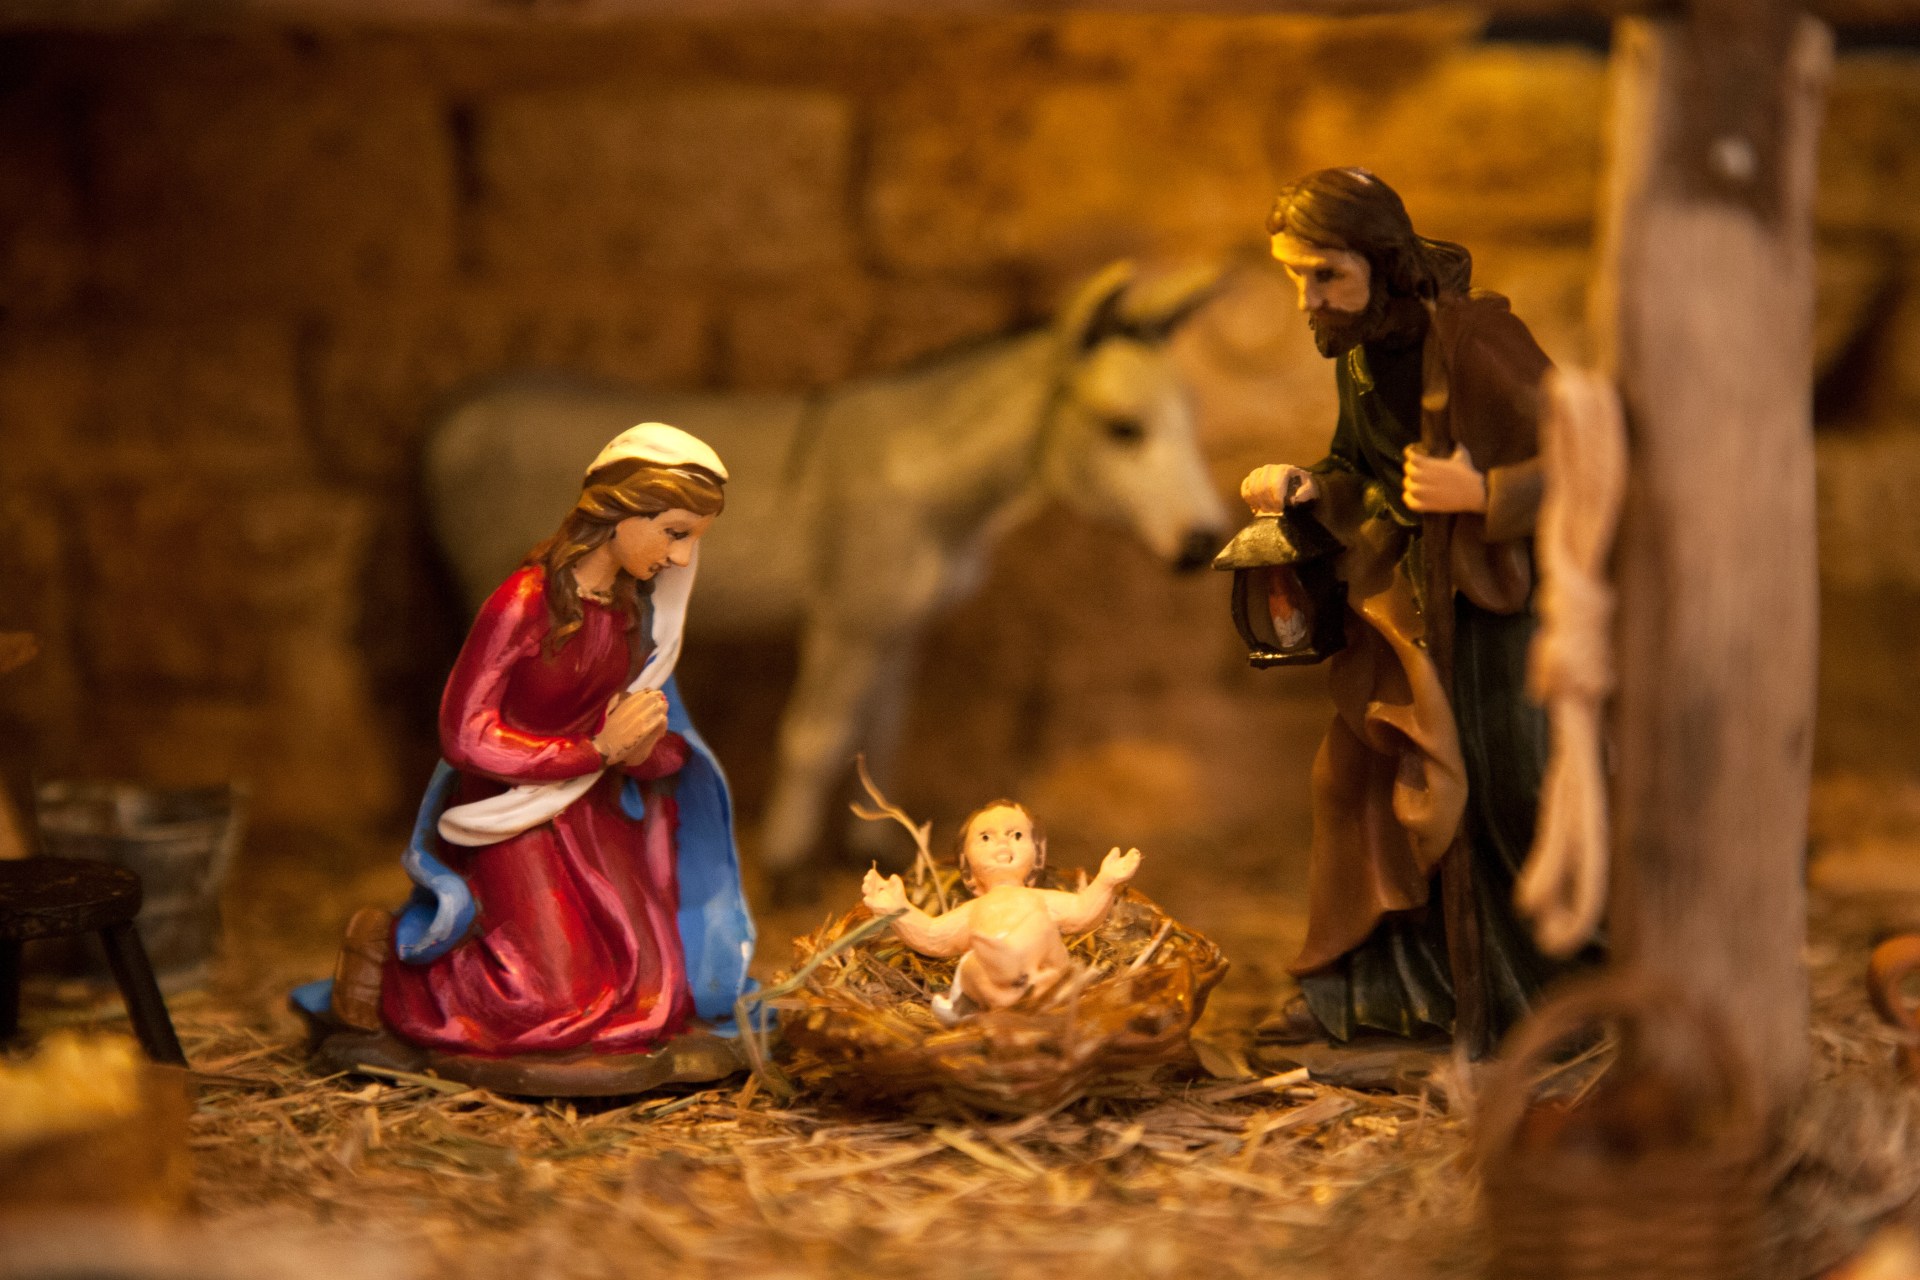 キリスト降誕の場面を再現する人形たち、情熱は国境を越えて SWI